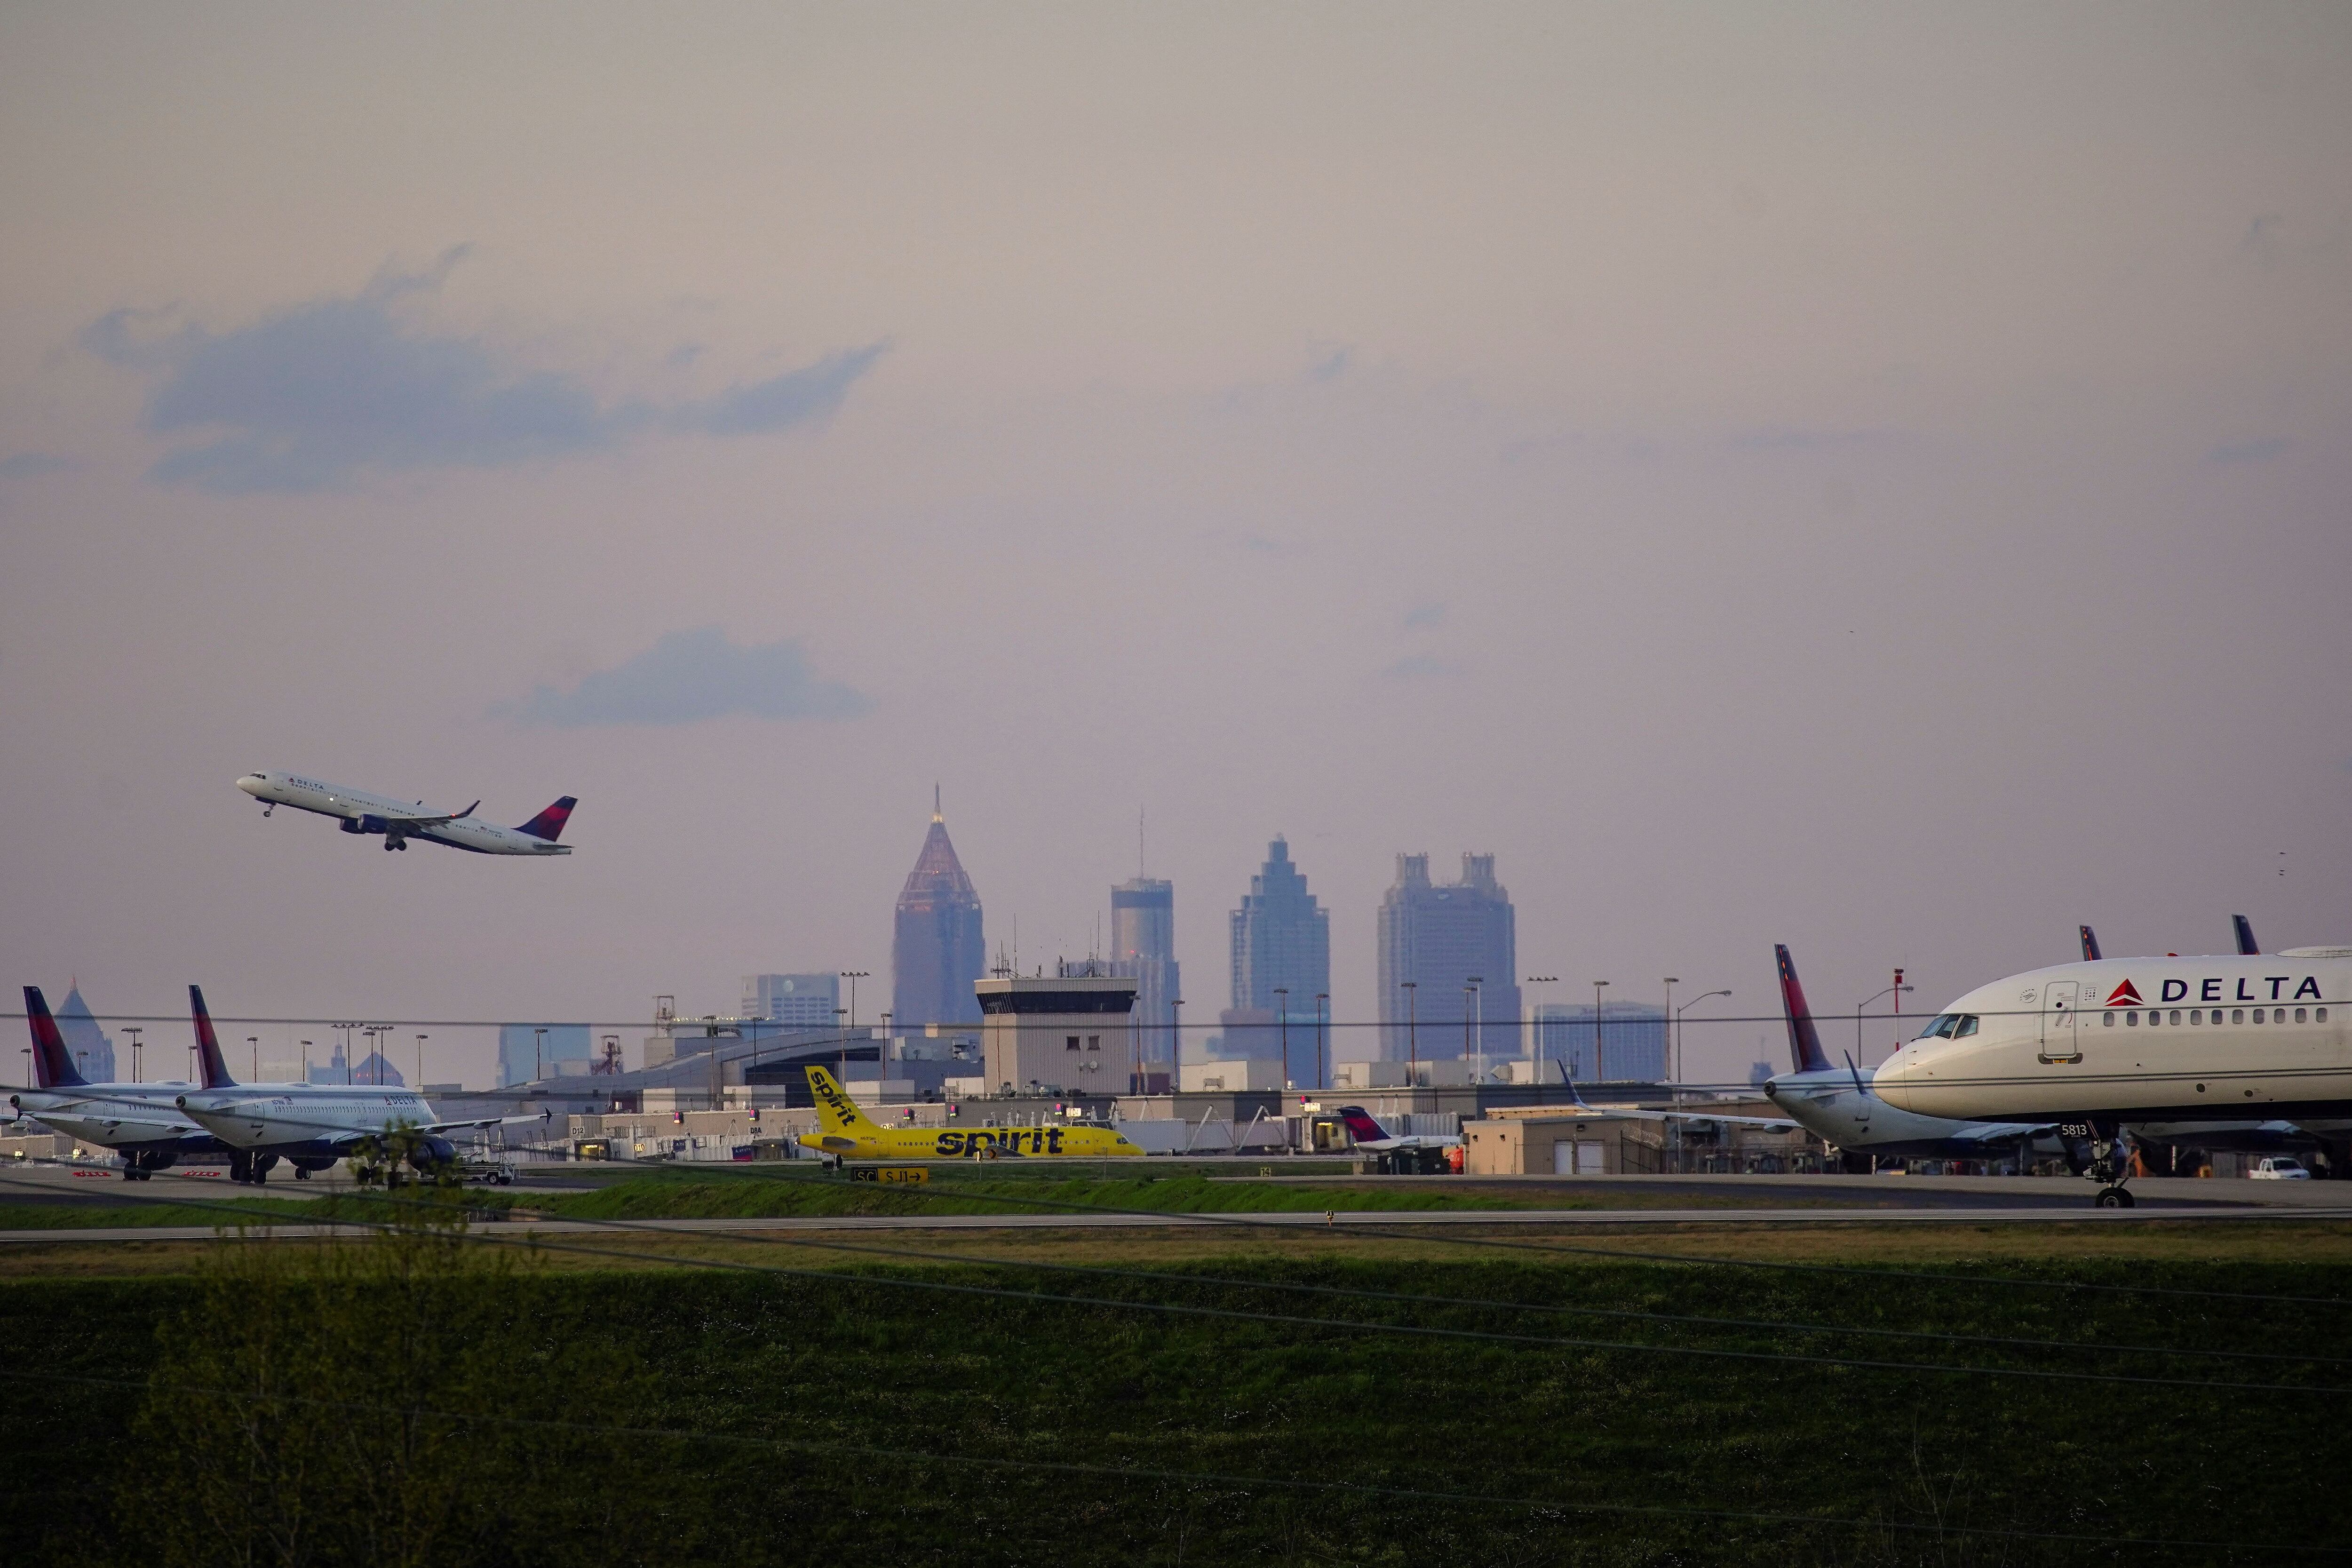 El aeropuerto Internacional Hartsfield-Jackson de Atlanta, conocido por ser el de mayor afluencia mundial desde 1998, ha enfrentado críticas relacionadas con la eficiencia y suficiencia de su personal de seguridad e inmigración. (REUTERS/Elijah Nouvelage)